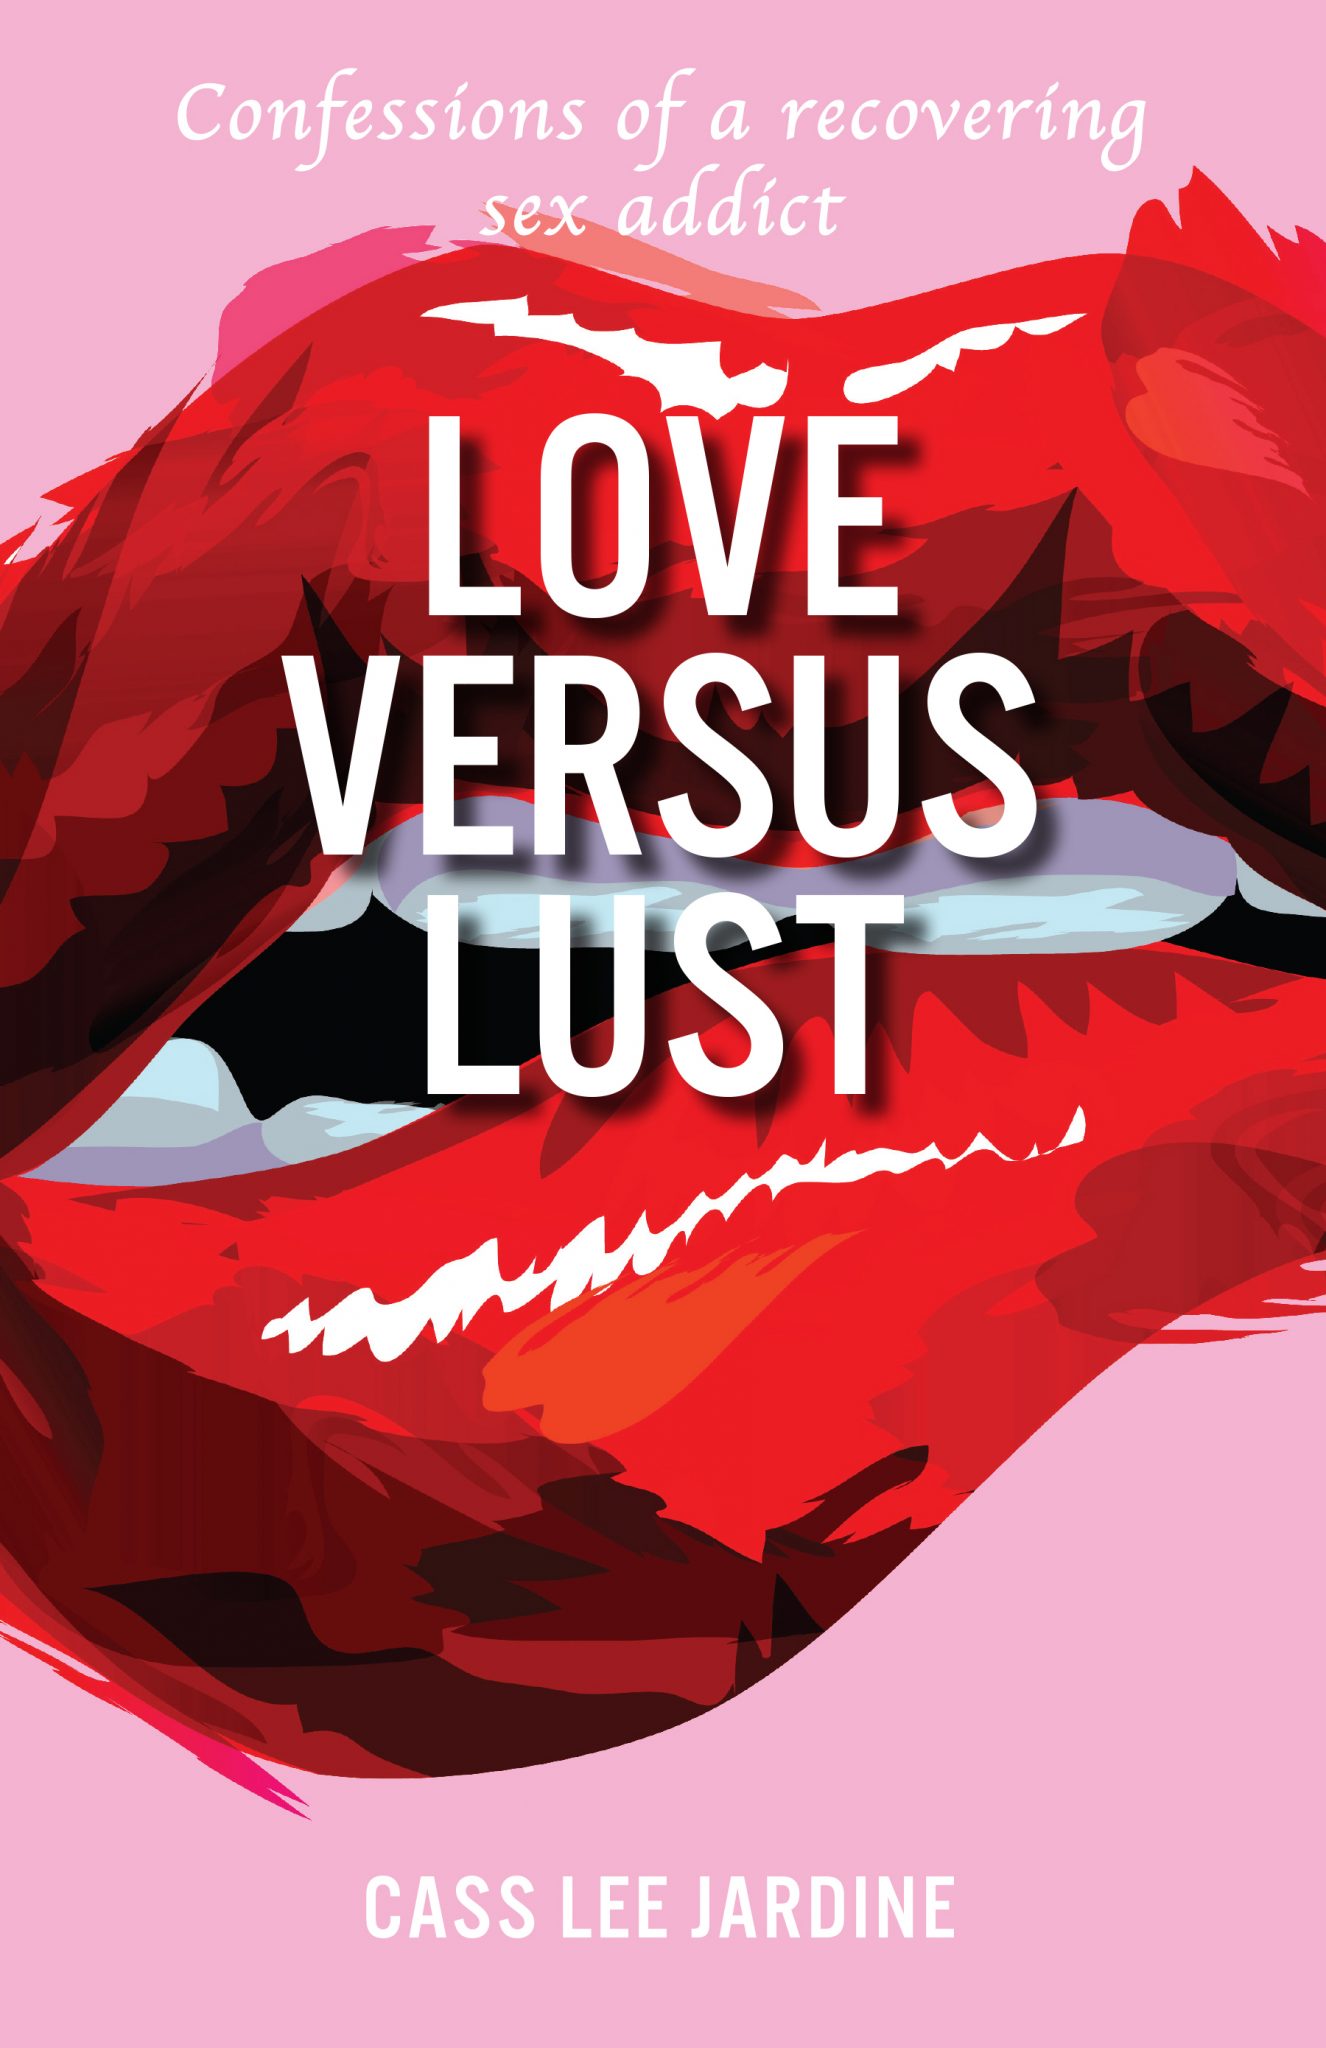 Love Versus Lust